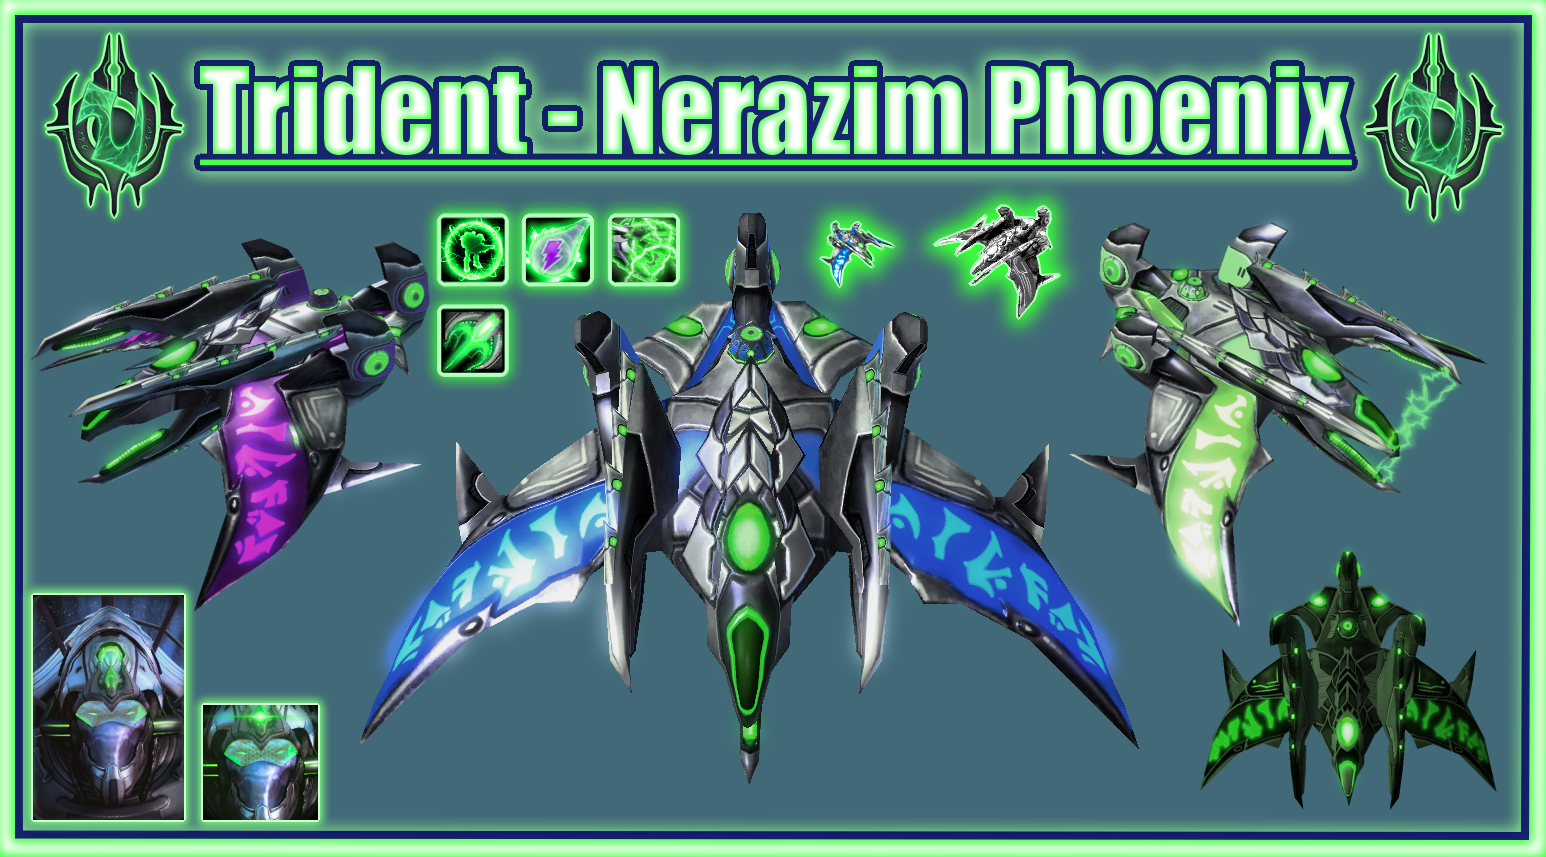 Nerazim Phoenix - Trident